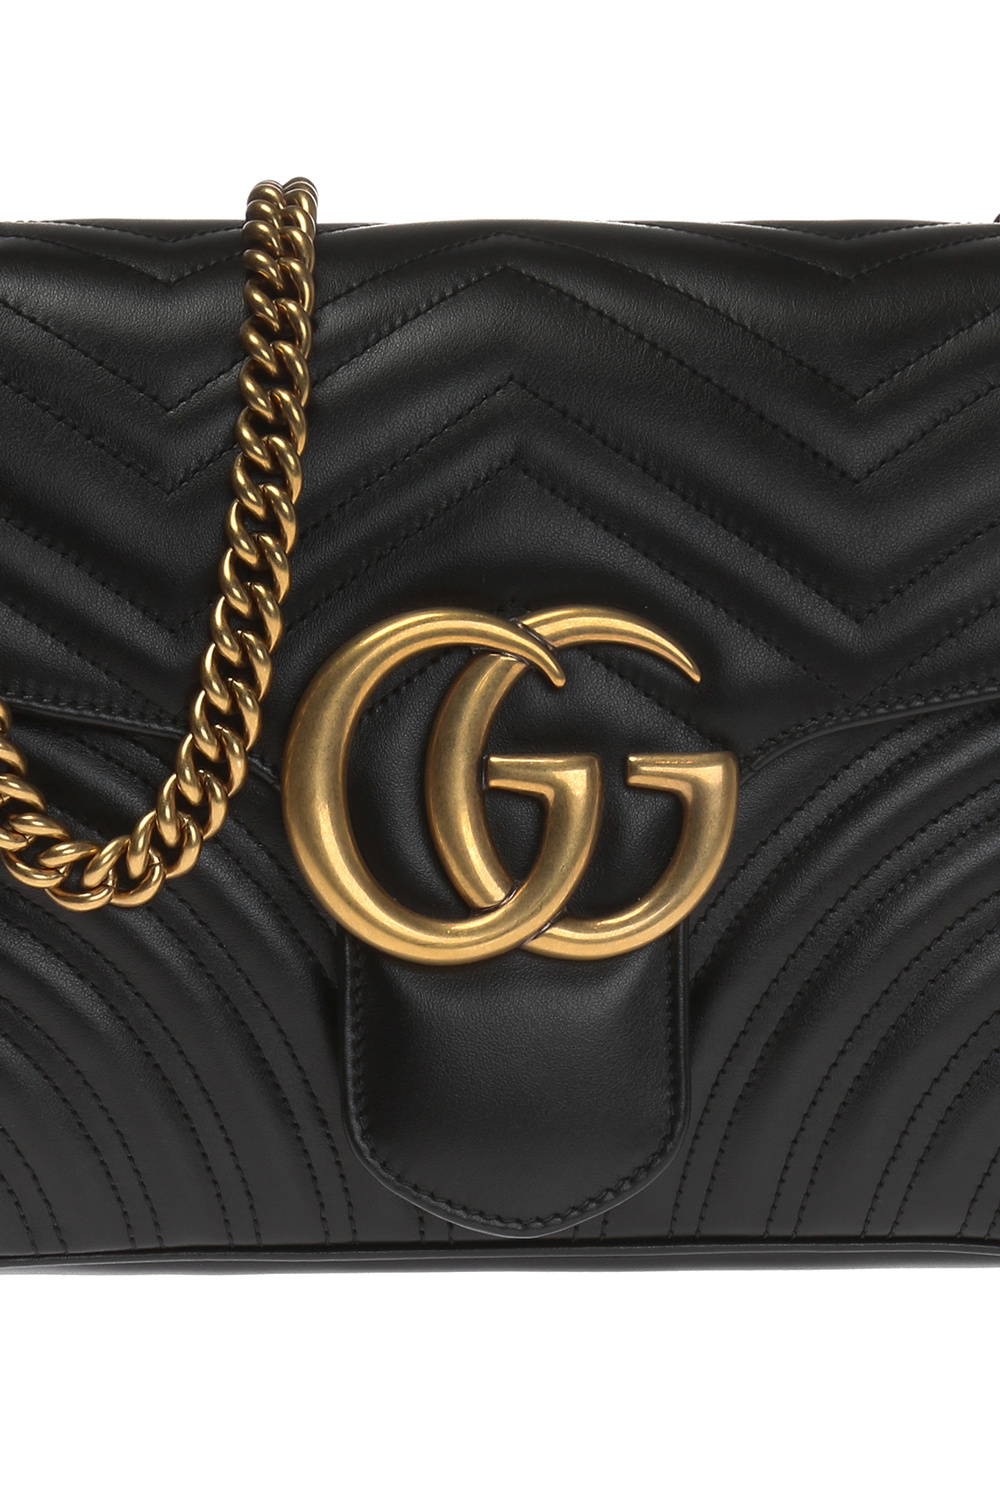 GG Marmont medium shoulder bag